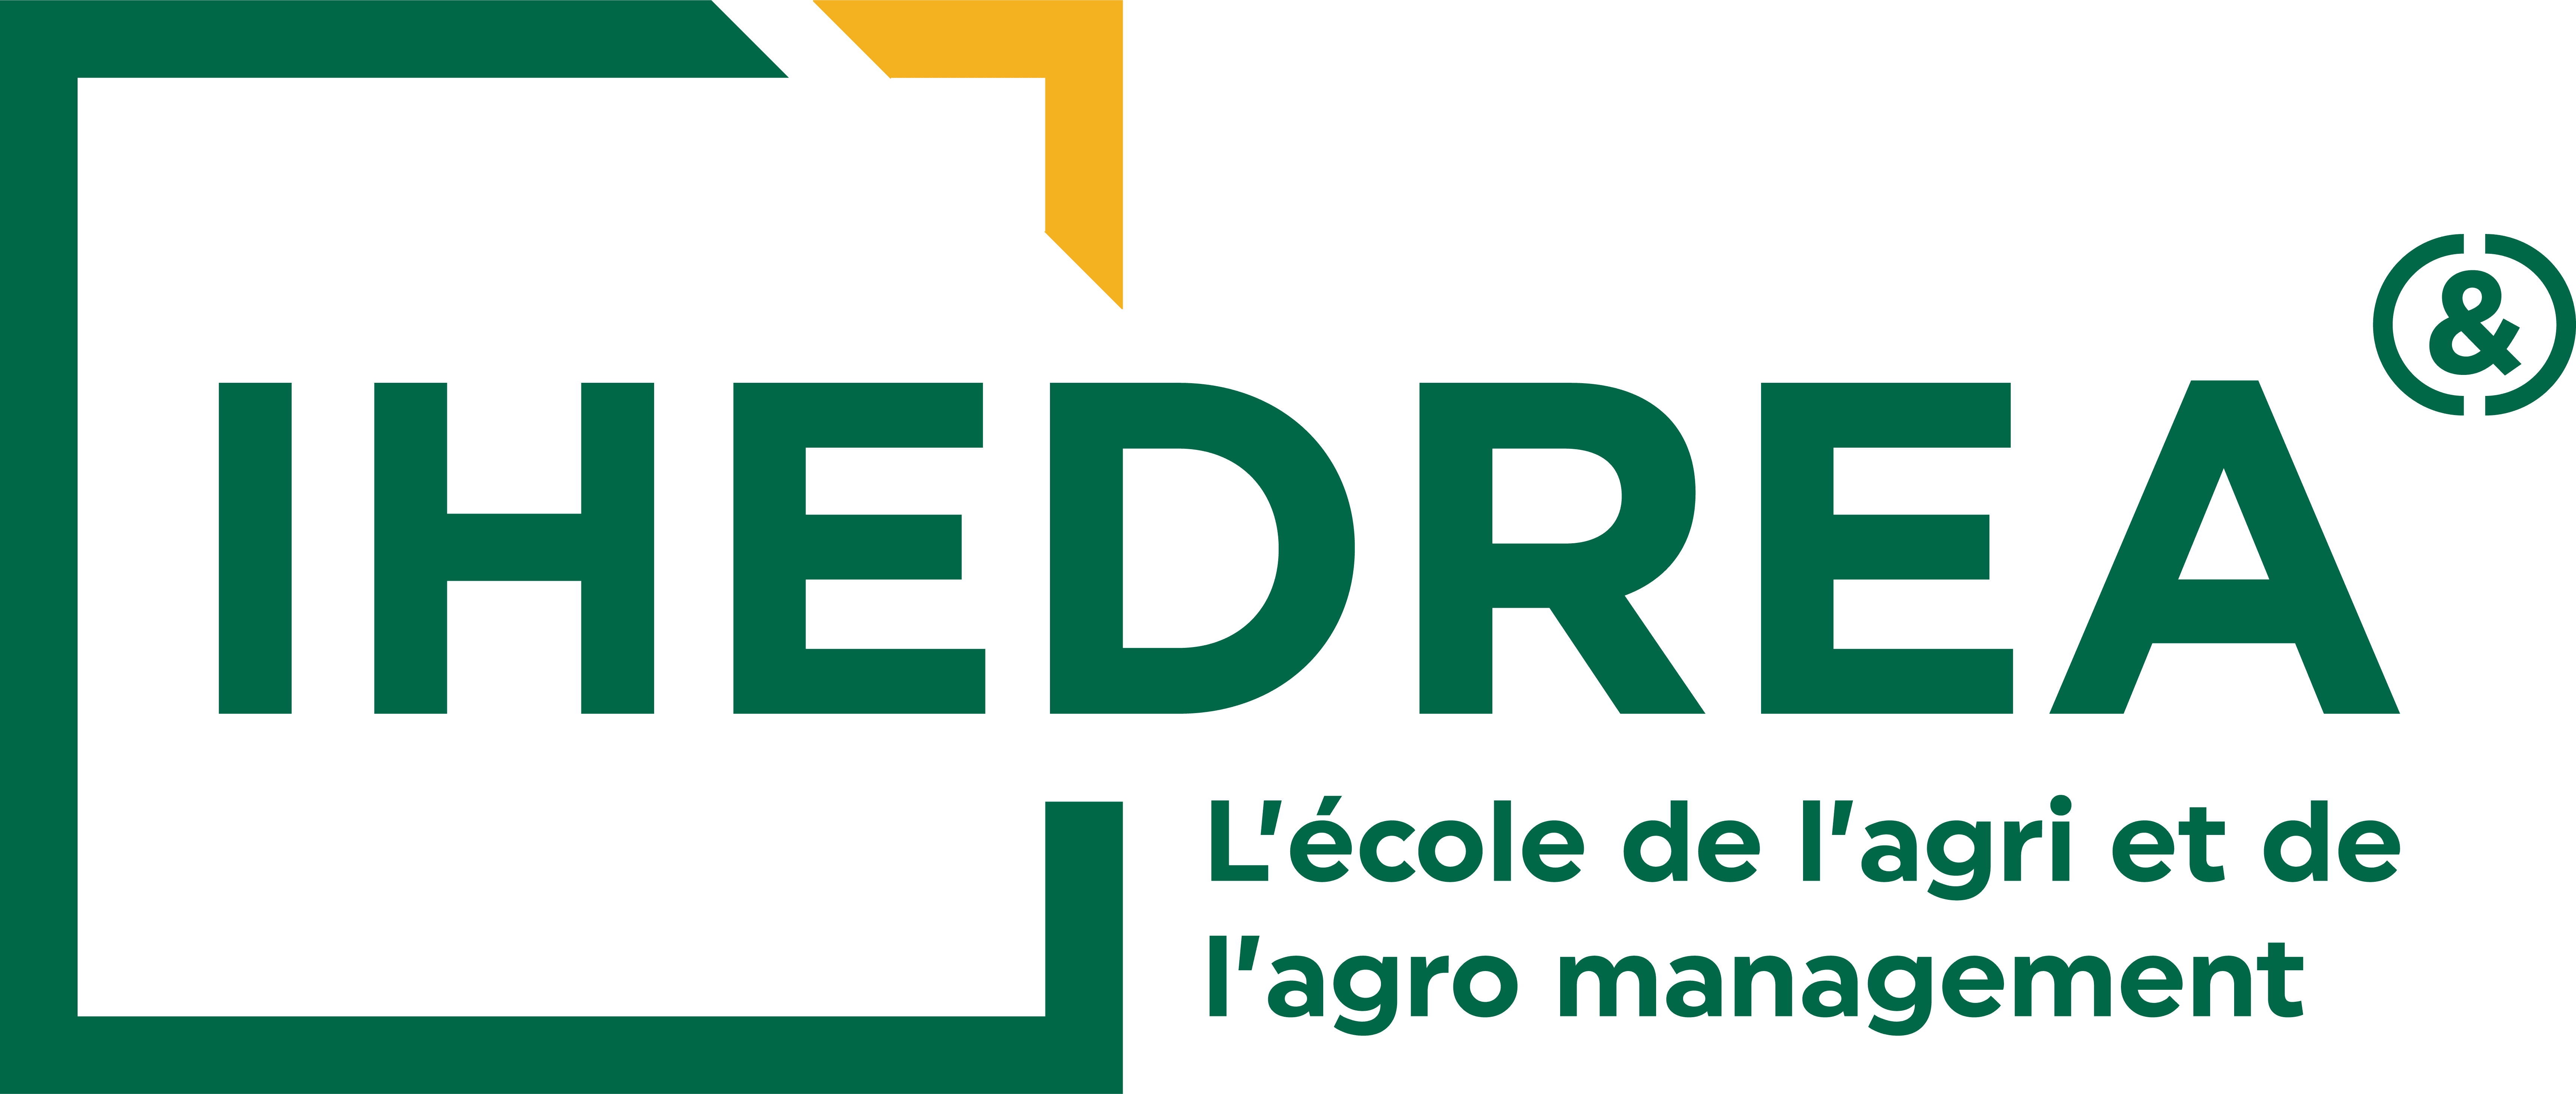 Logo de l'école IHEDREA